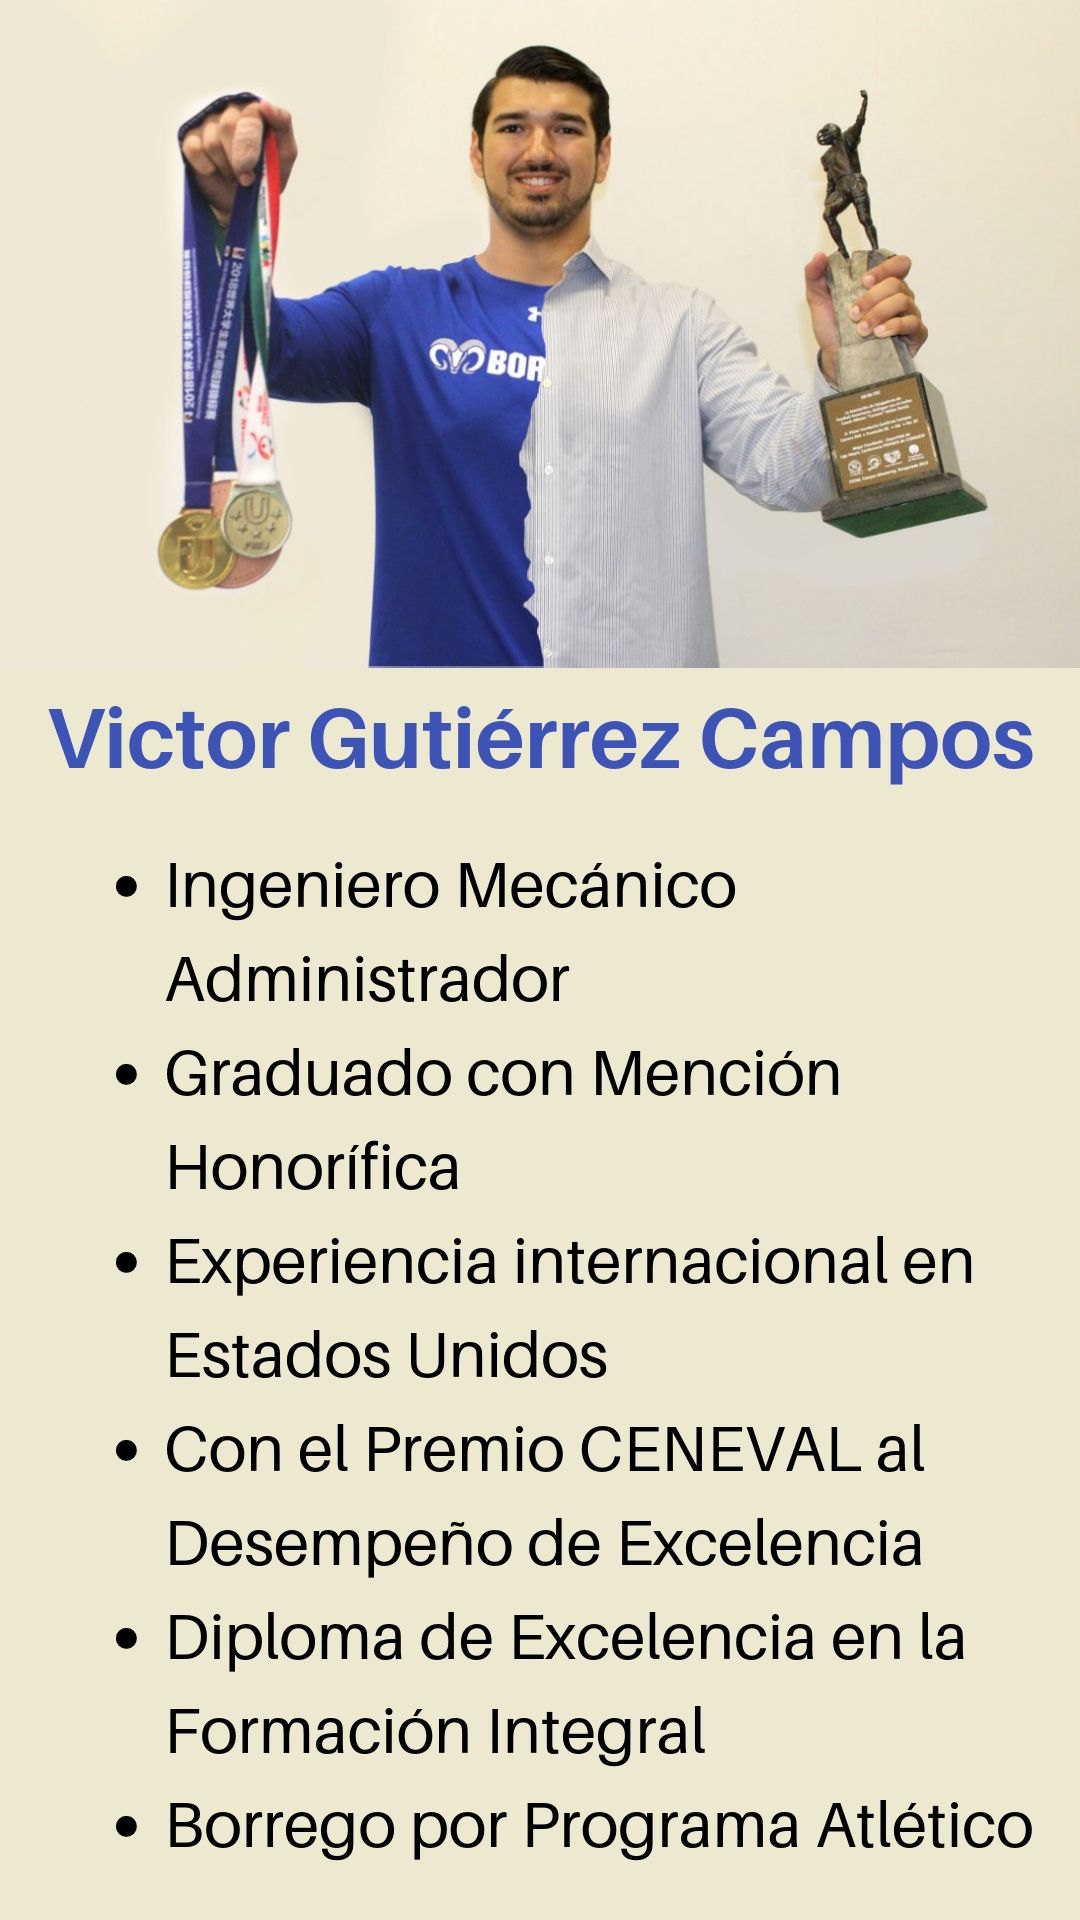 Victor-Gutiérrez-Campos